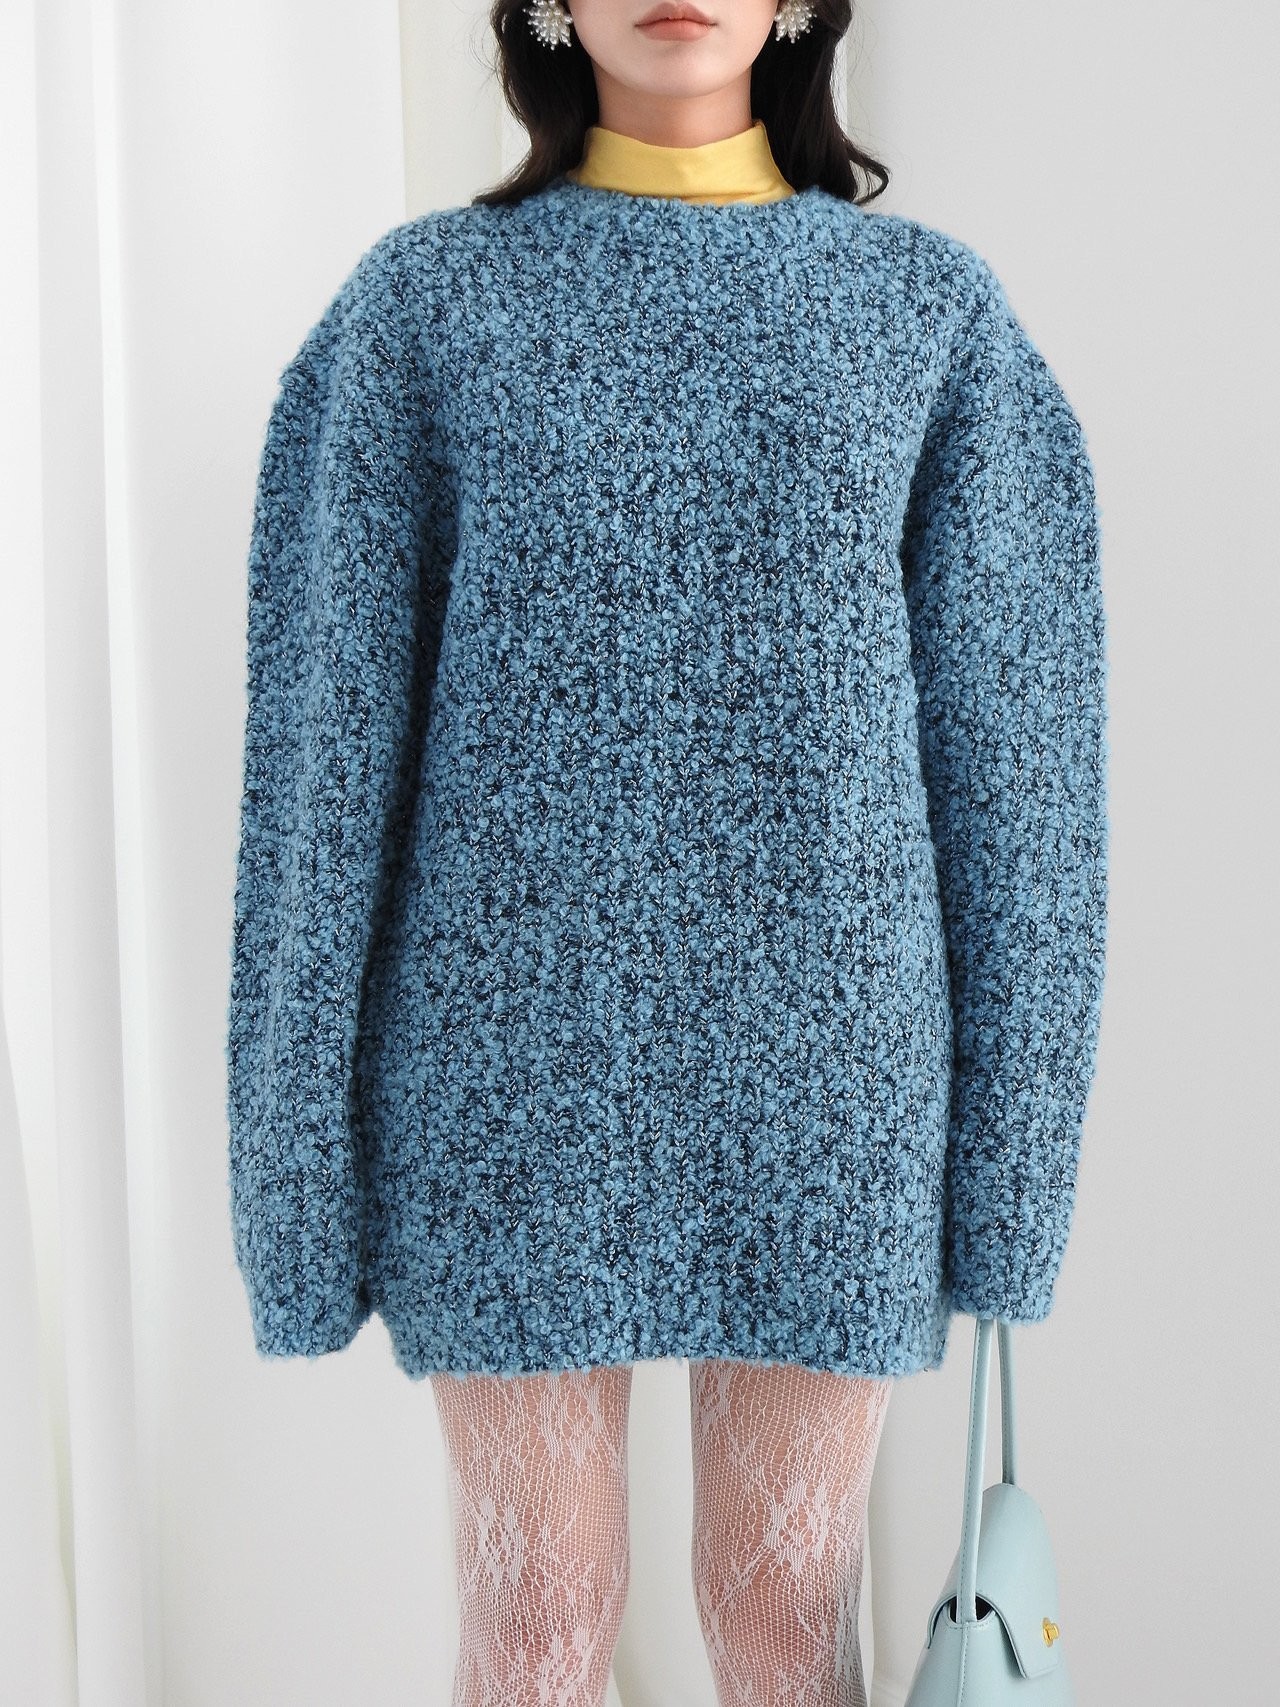 포더마nt 알파카 울혼방 겨울 부클 니트 스웨터 티셔츠 3color